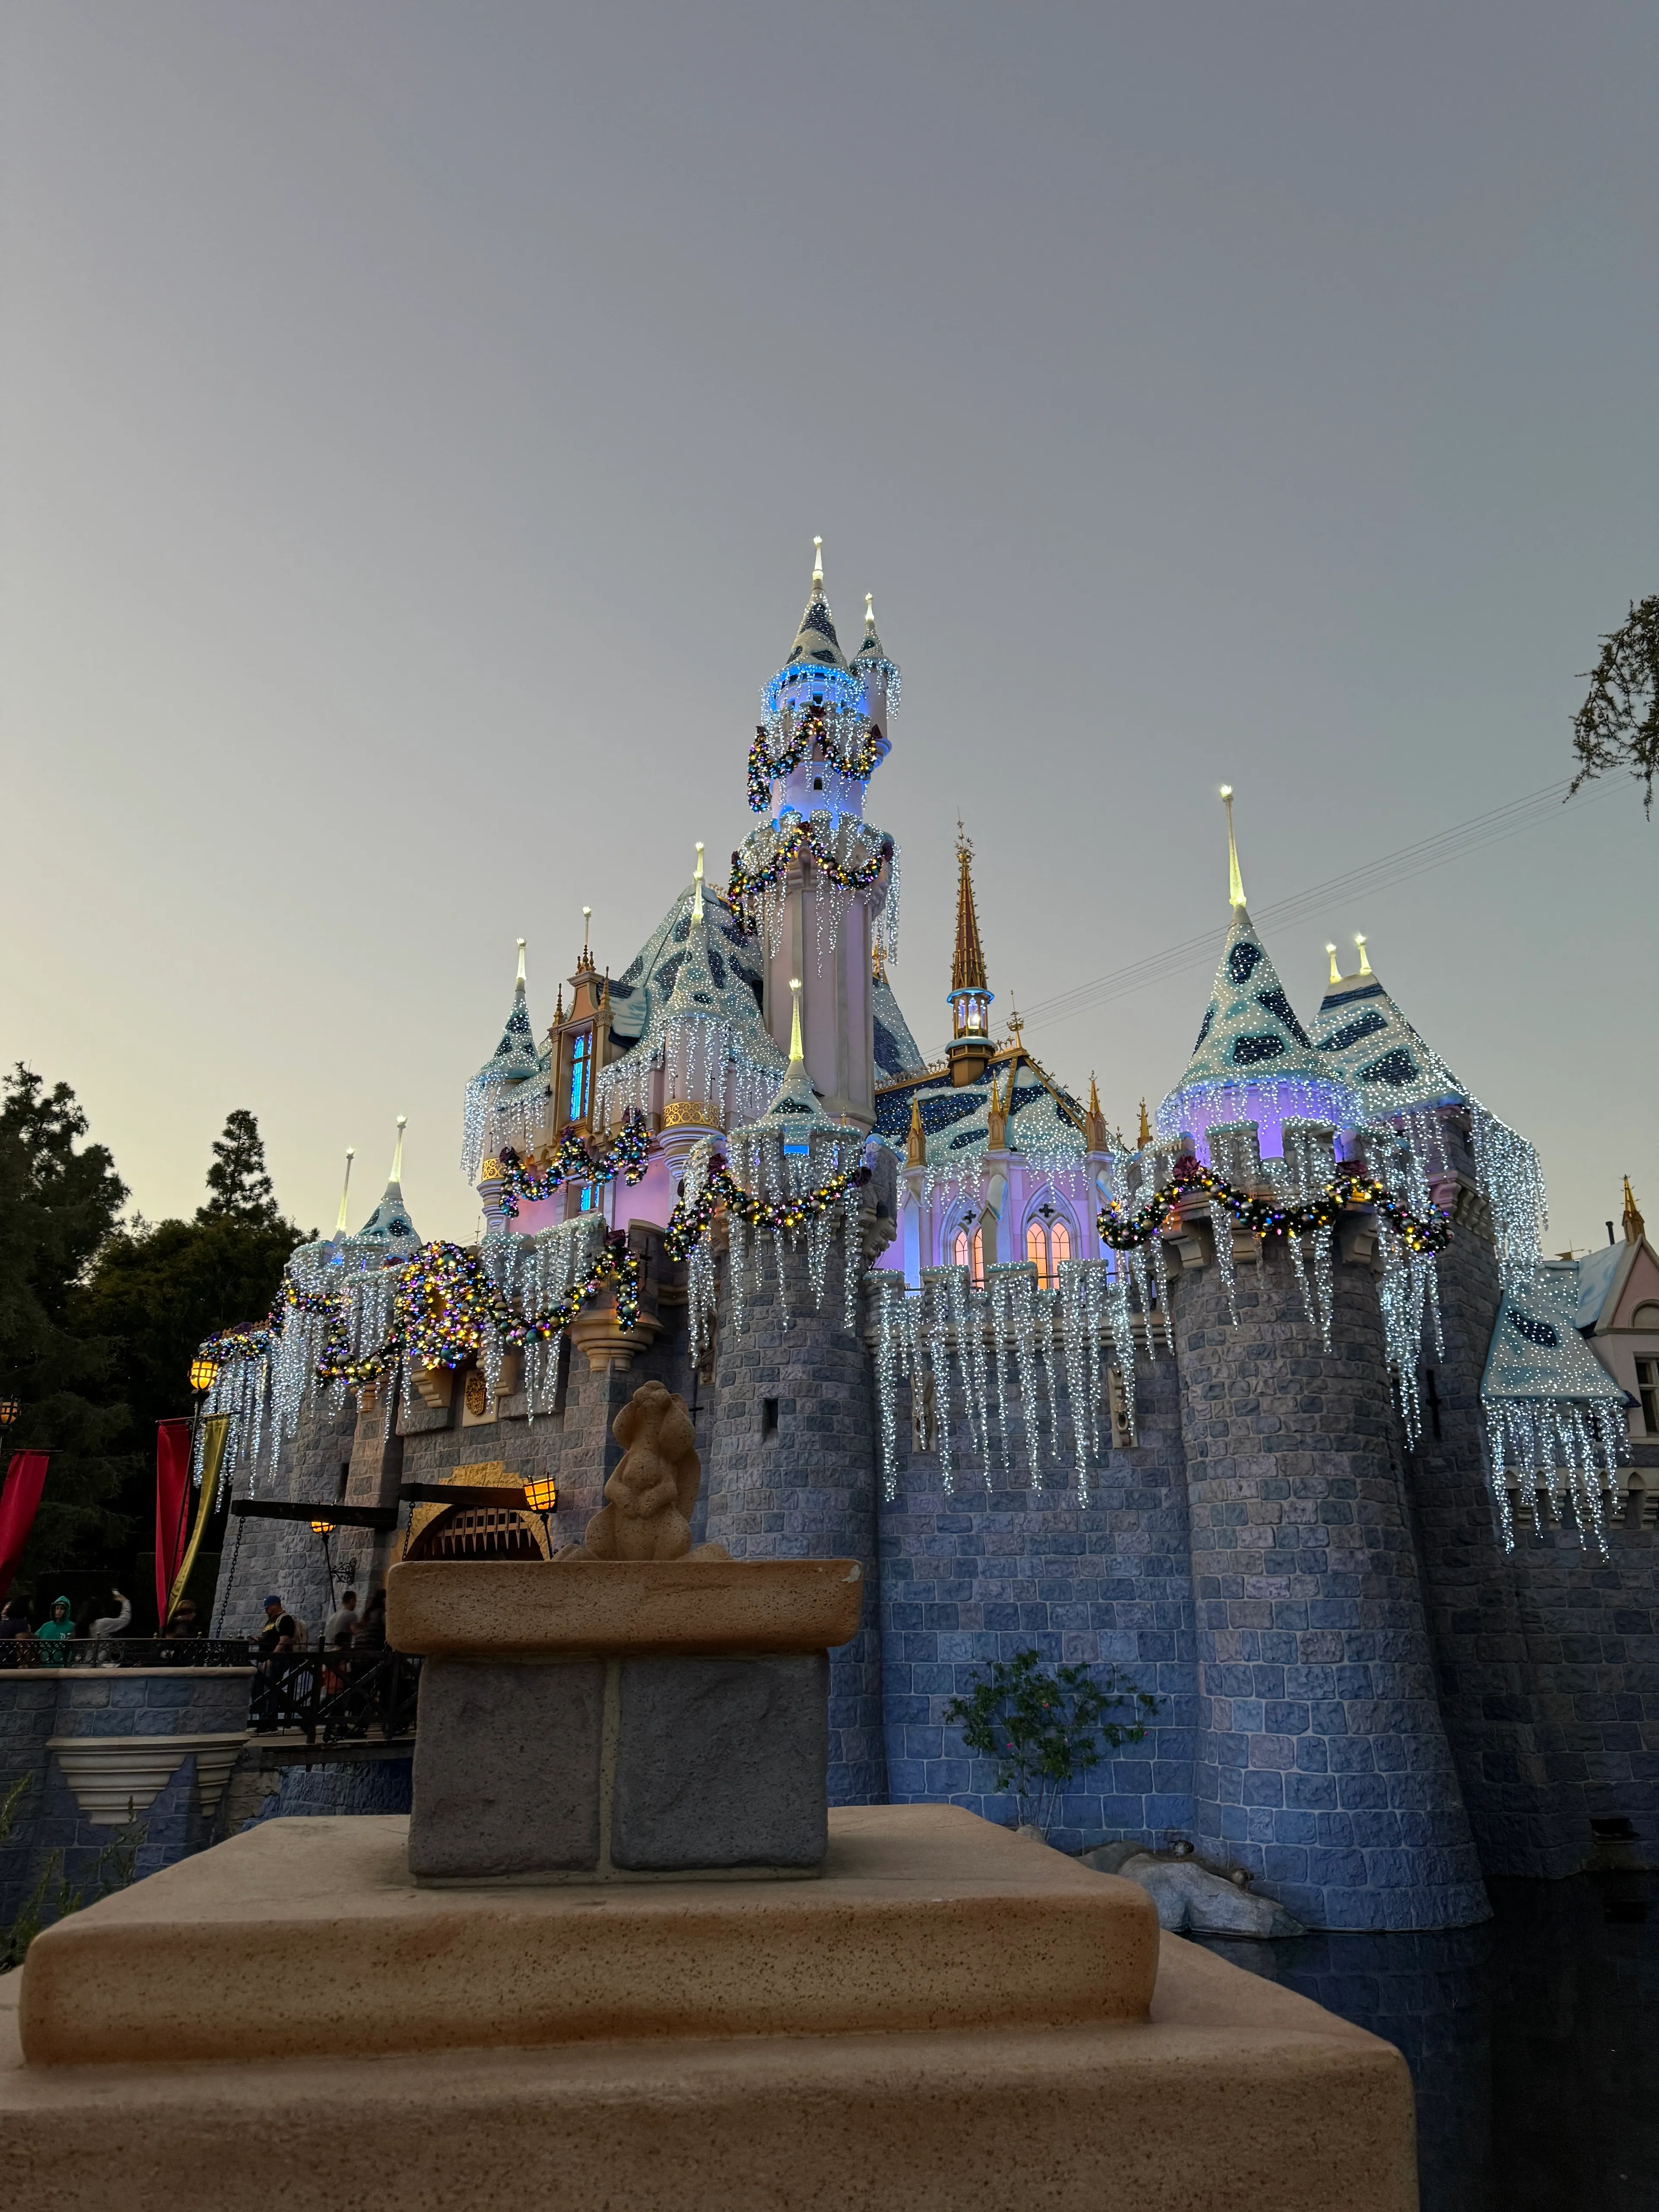 Foto não editada do Castelo da Bela Adormecida no Disneyland.